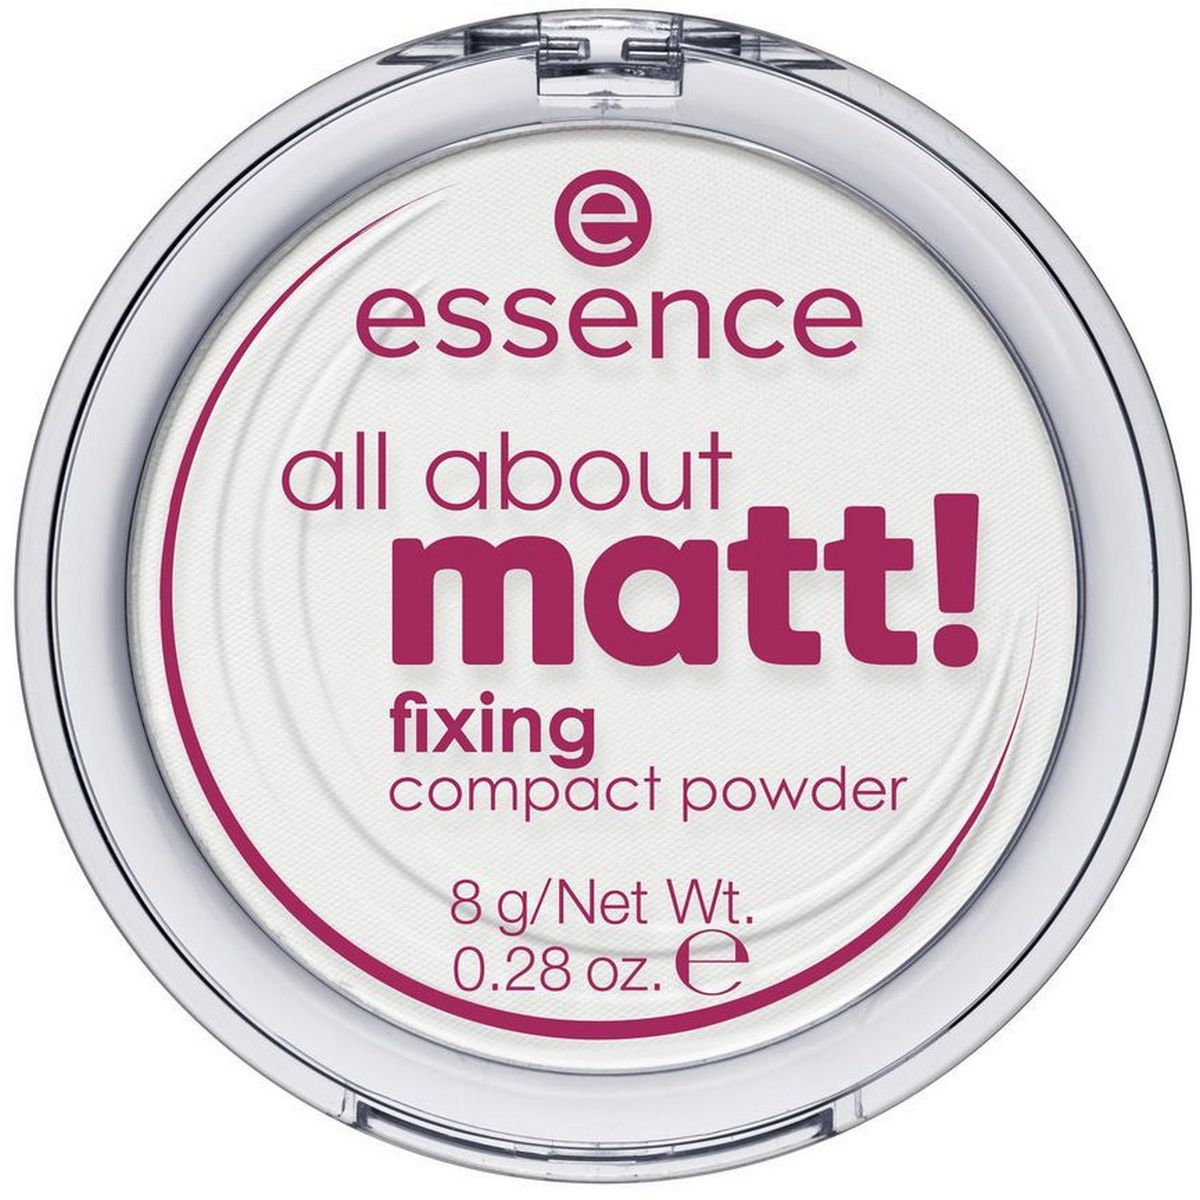 ESSENCE All about matt! Poudre compacte fixante 8g